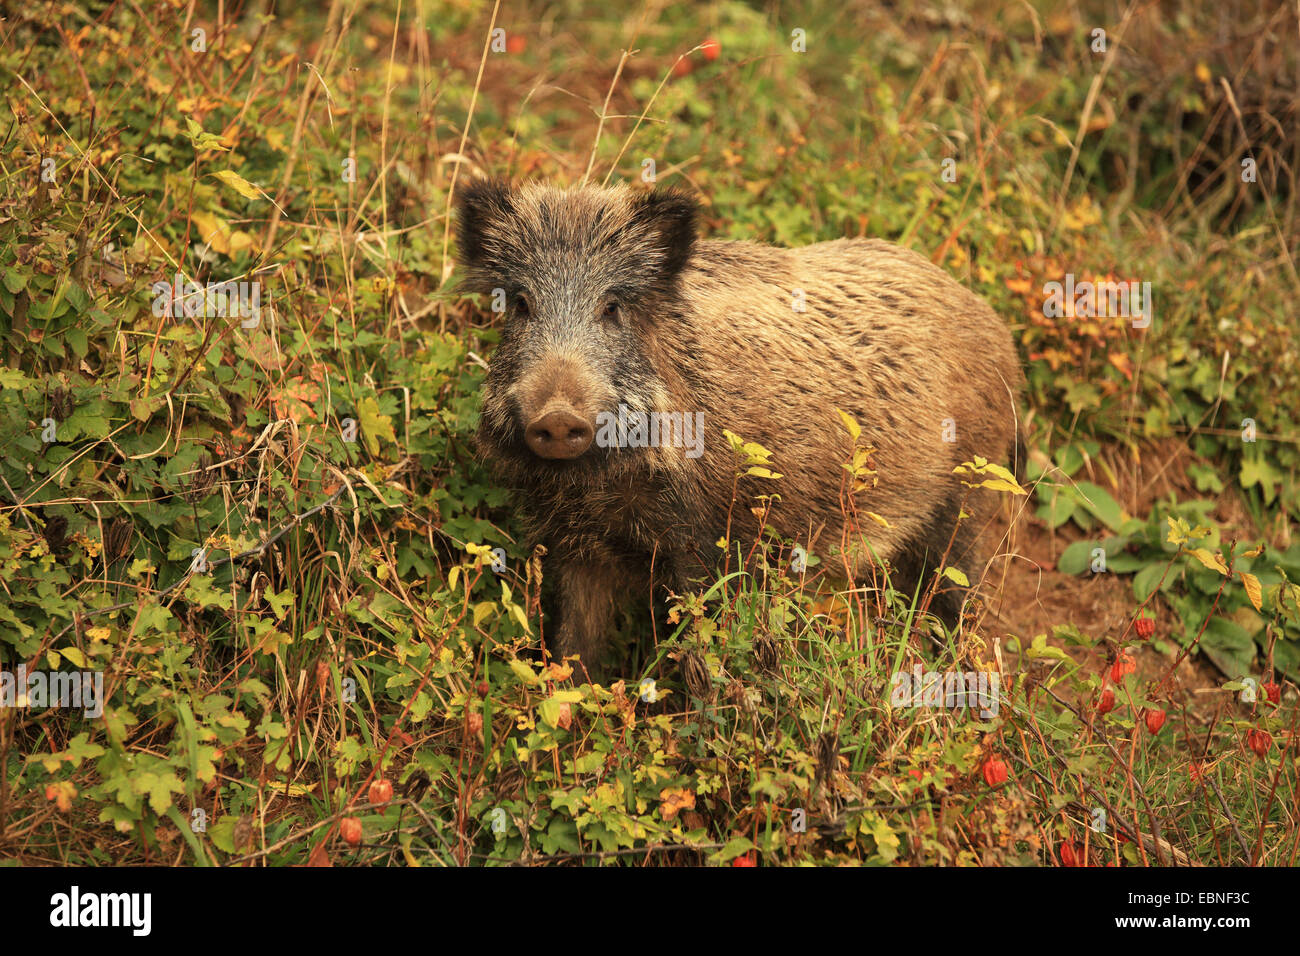 Le sanglier, le porc, le sanglier (Sus scrofa), debout dans le fourré, Allemagne, Bade-Wurtemberg Banque D'Images